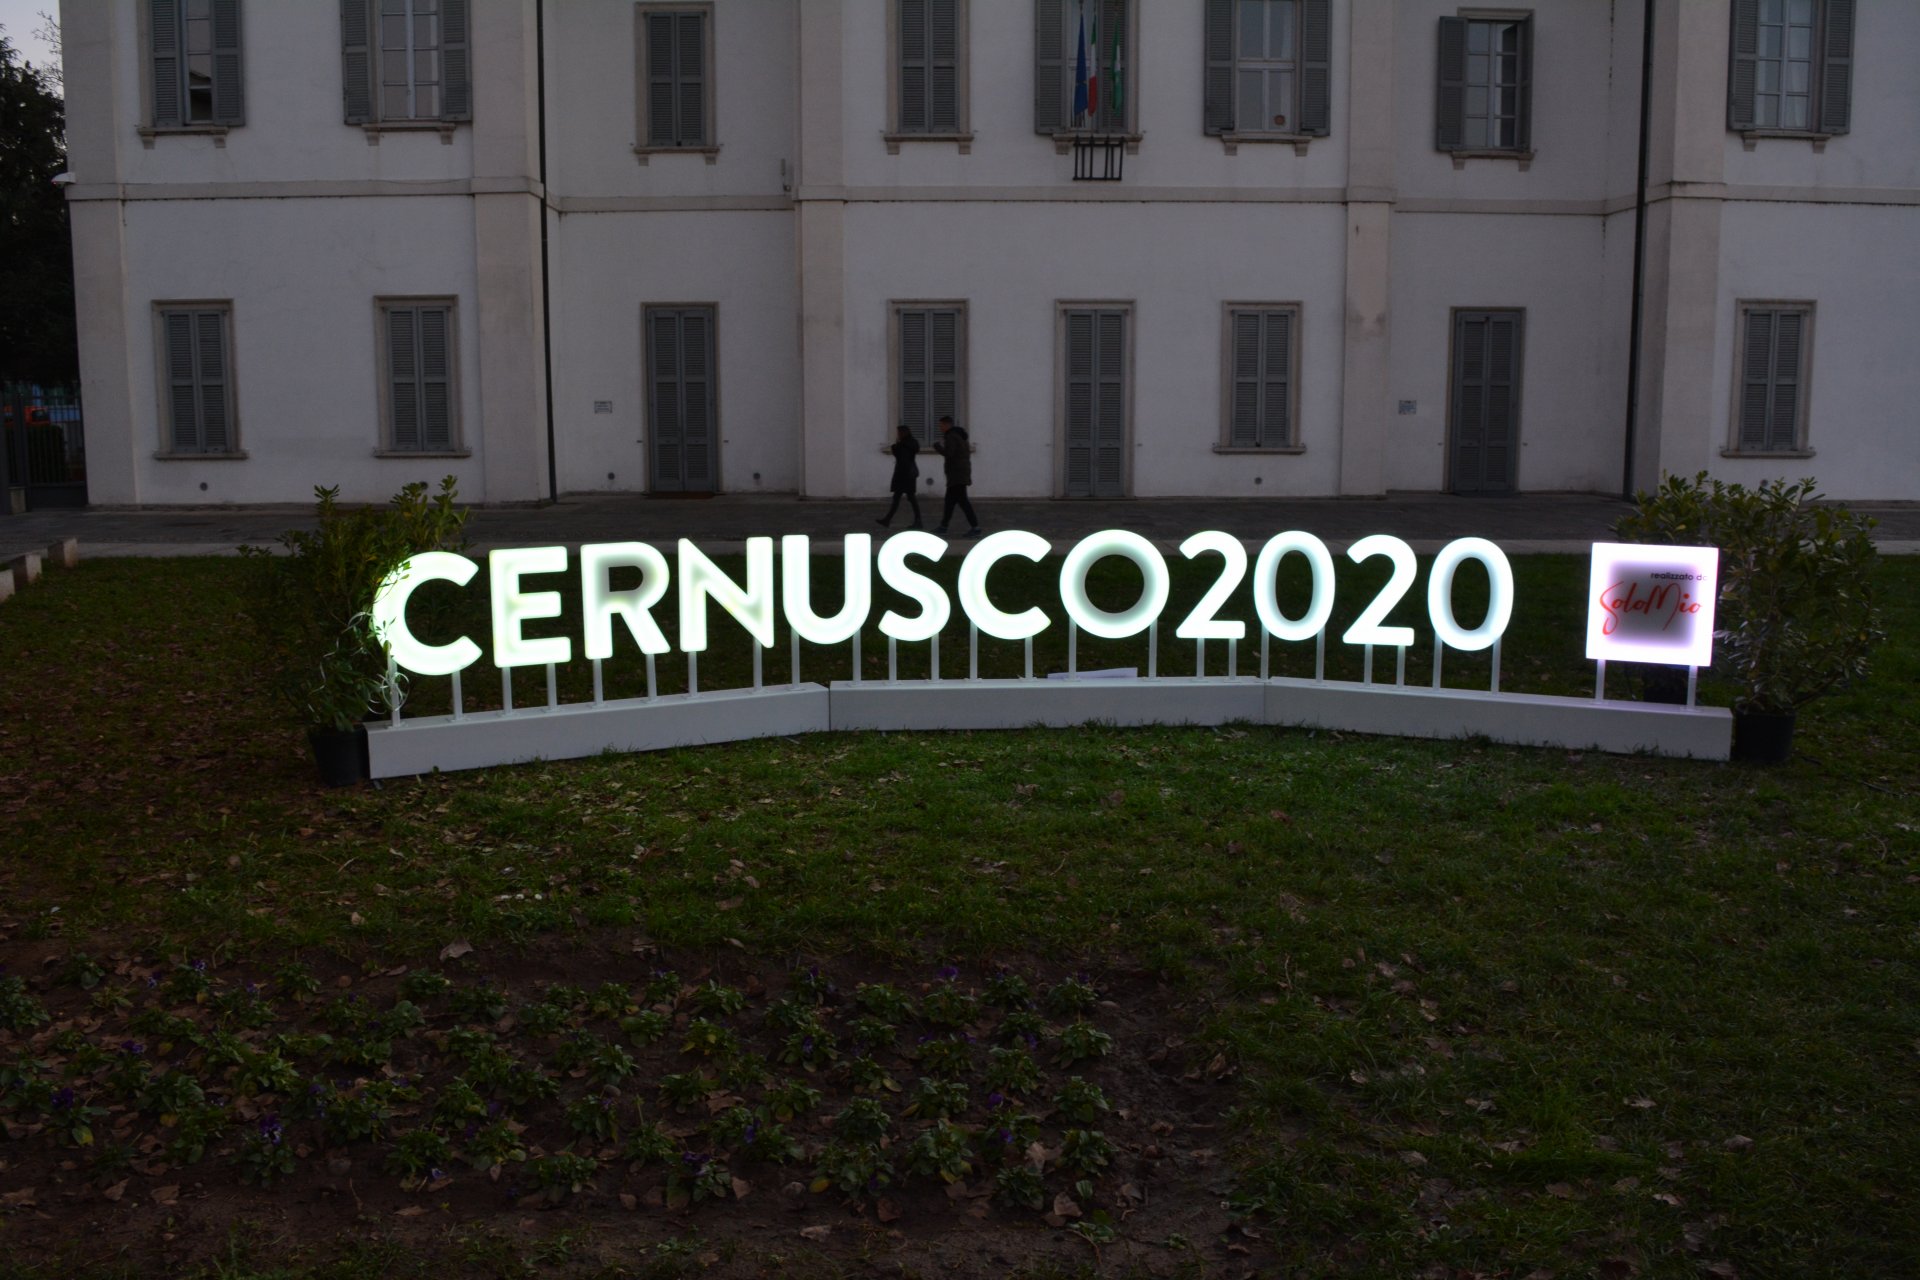 Cernusco sul Naviglio illuminata la scritta Cernusco 2020 in piazza Unità d'Italia